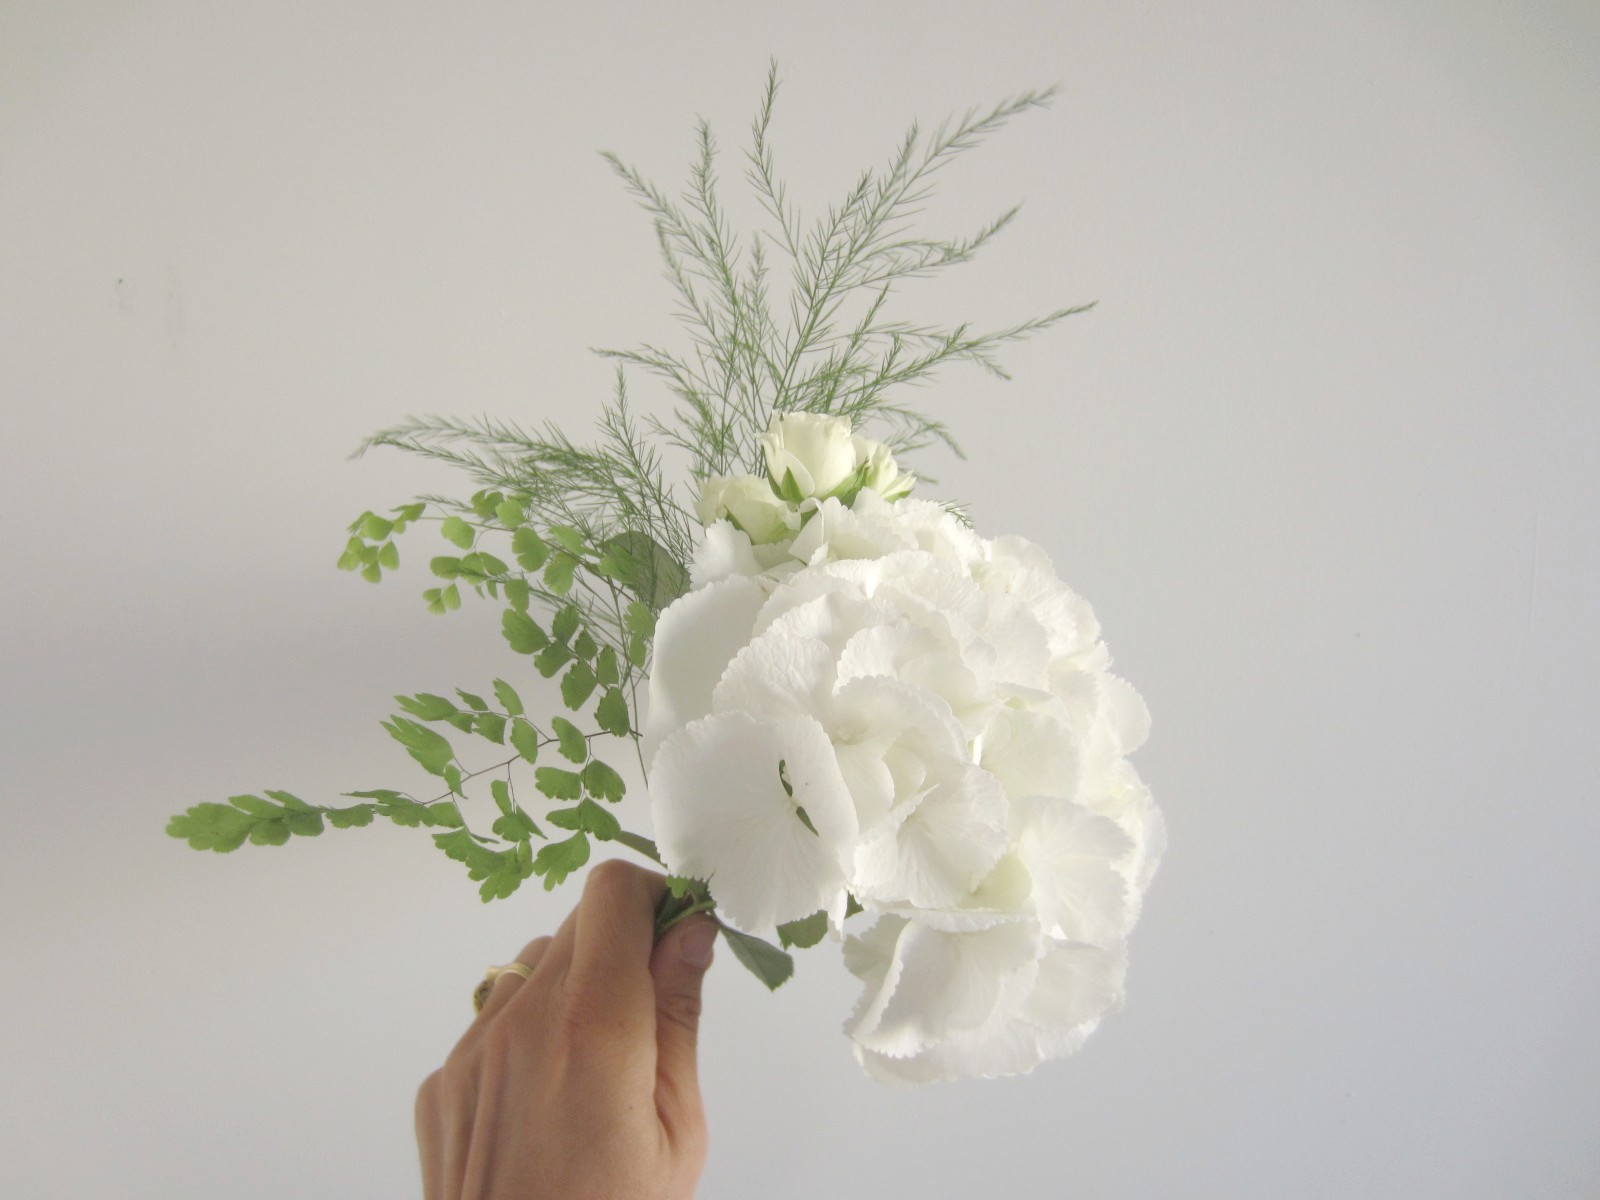 La petite boutique de fleurs - Fleuriste mariage Lyon: Les bouquets de  Chloé, mariage civil